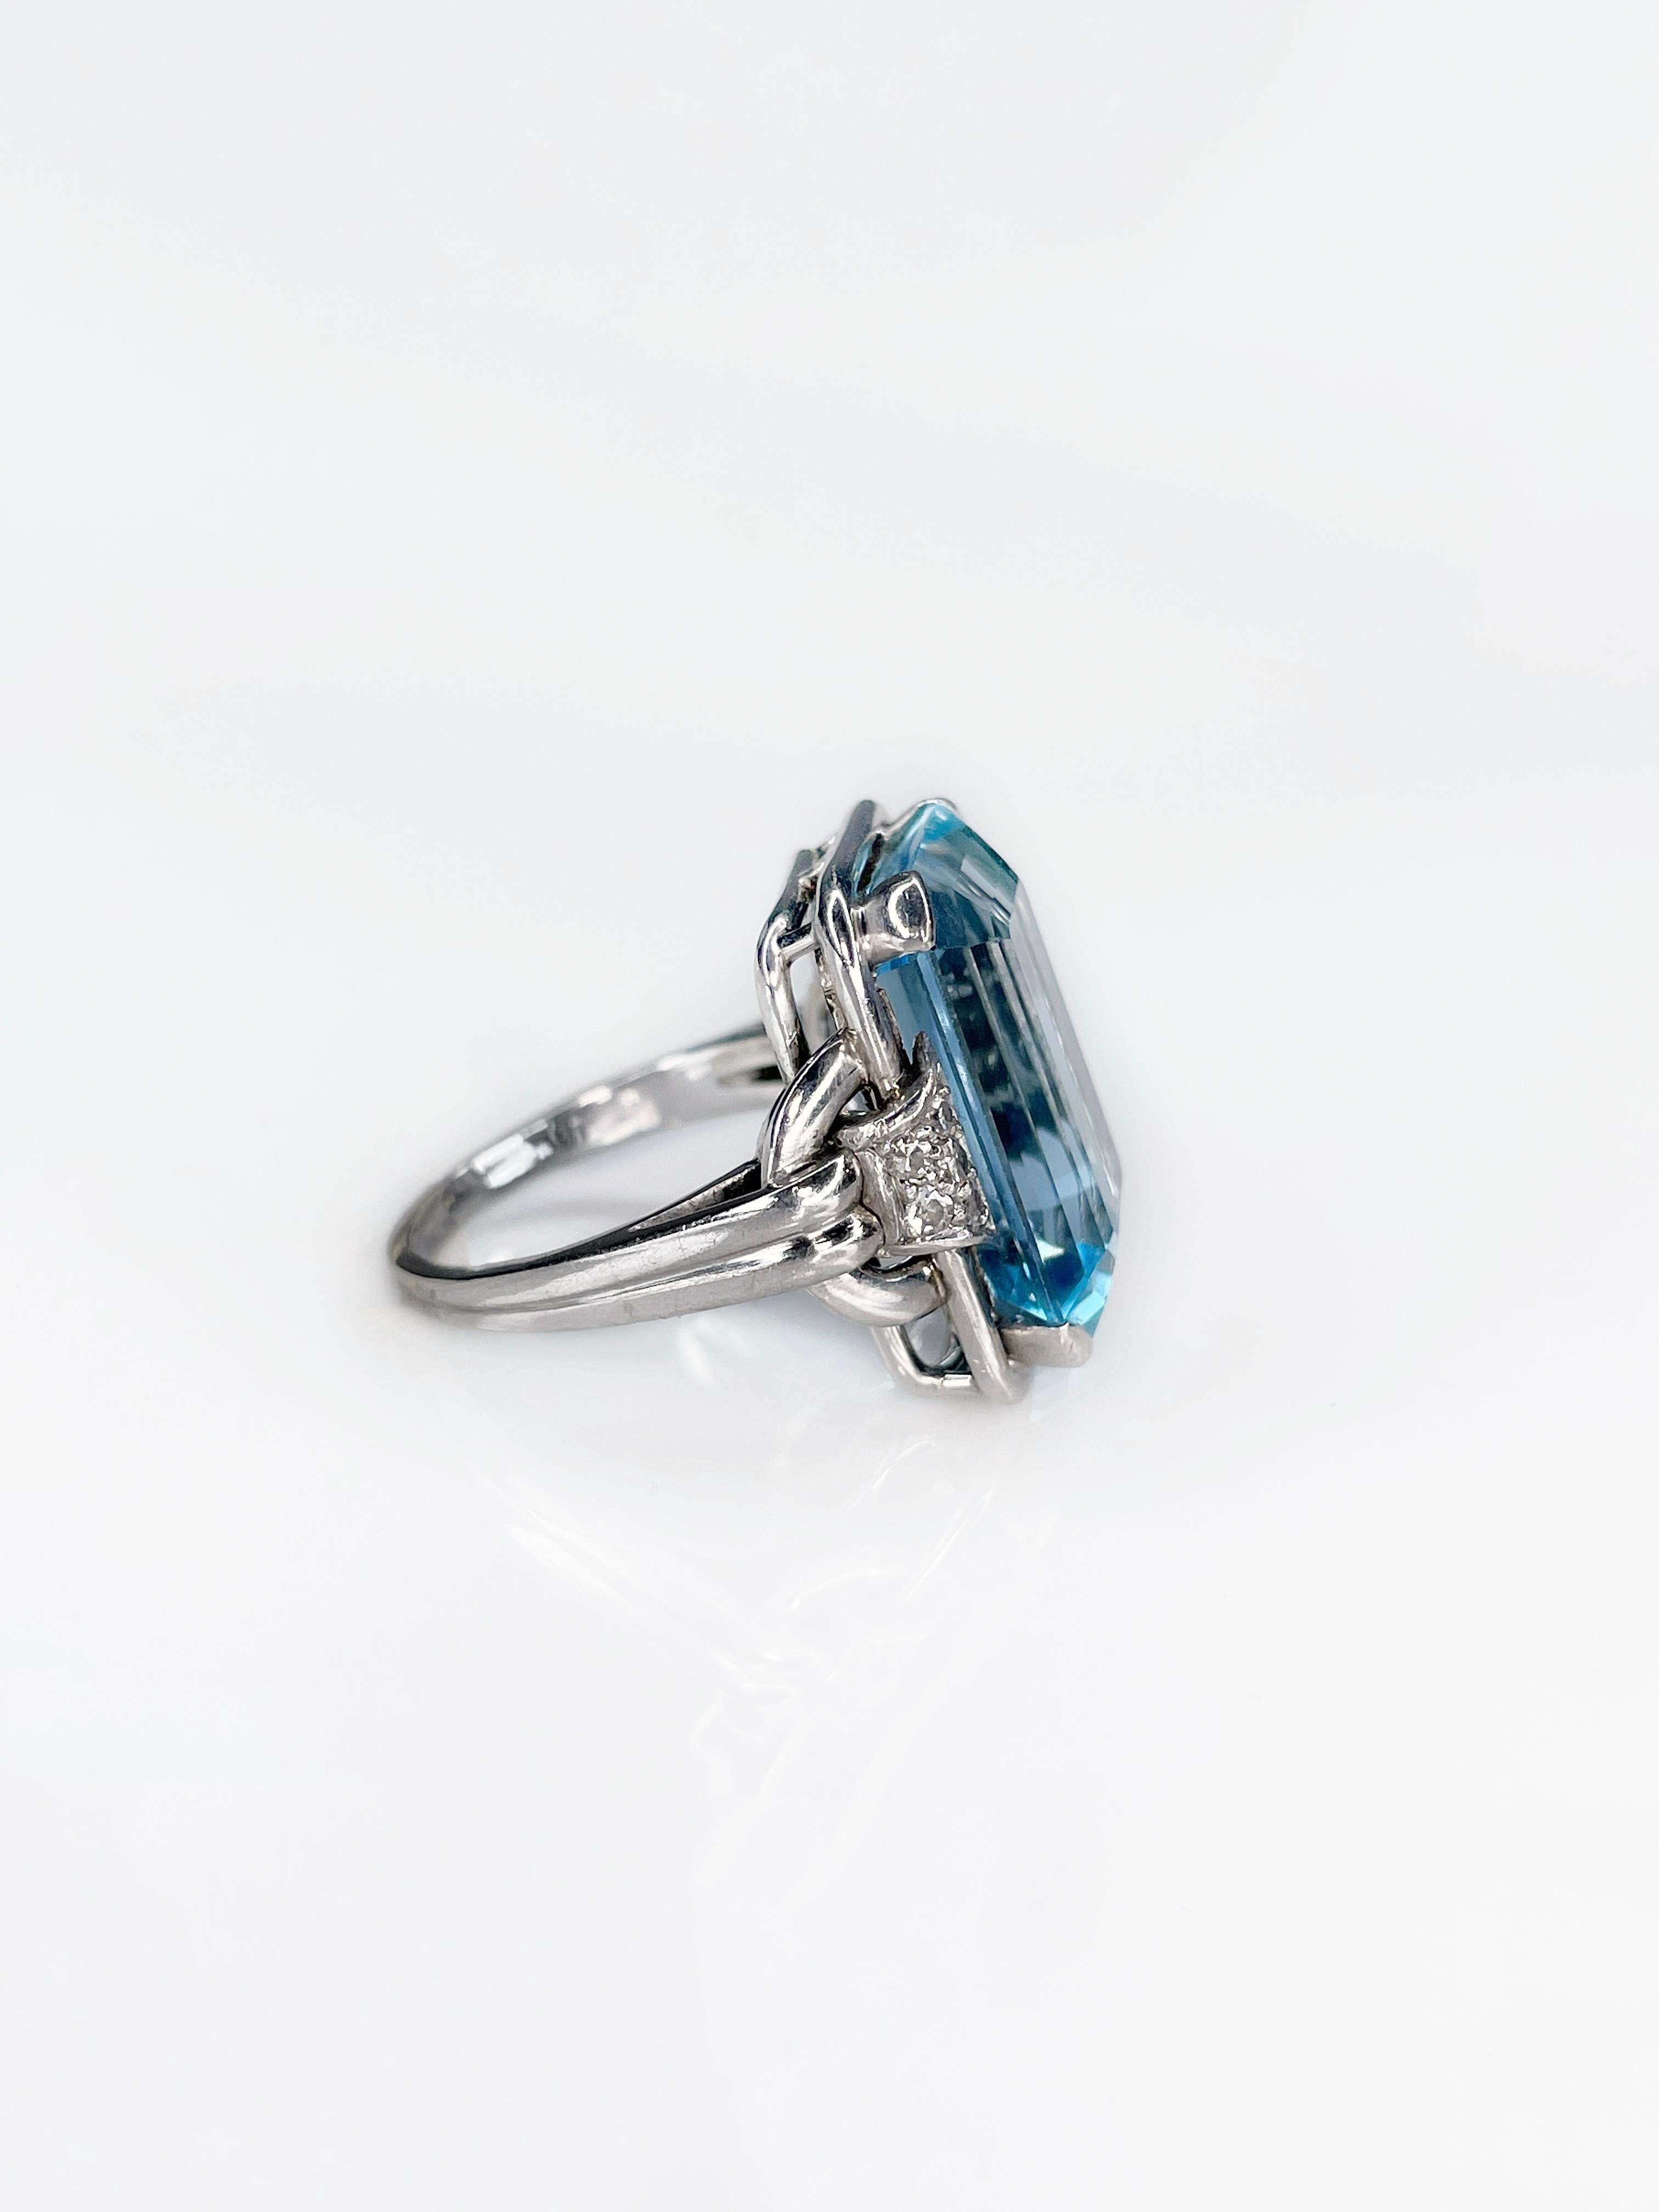 14 carat aquamarine ring